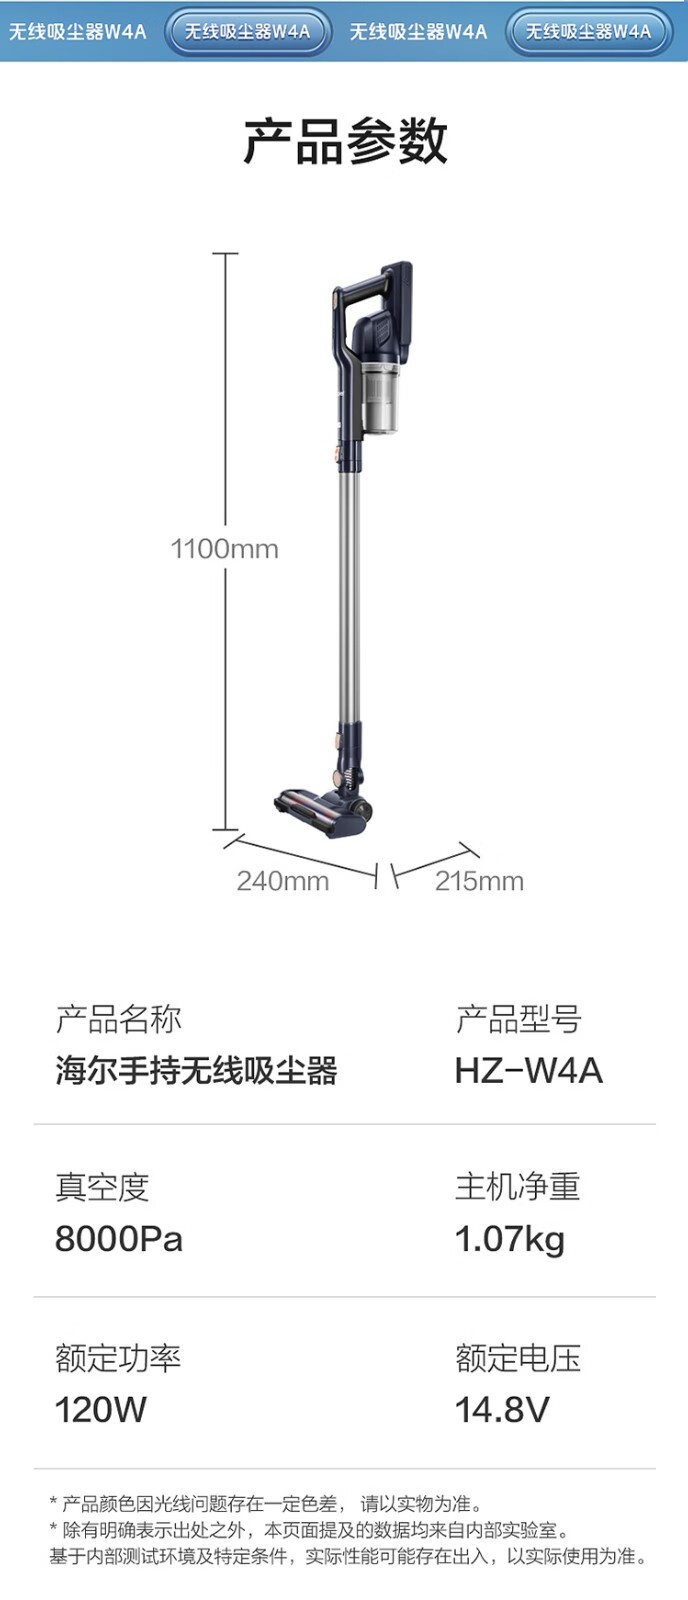 海尔/Haier 吸尘器 HZ-W4A 1.07kg